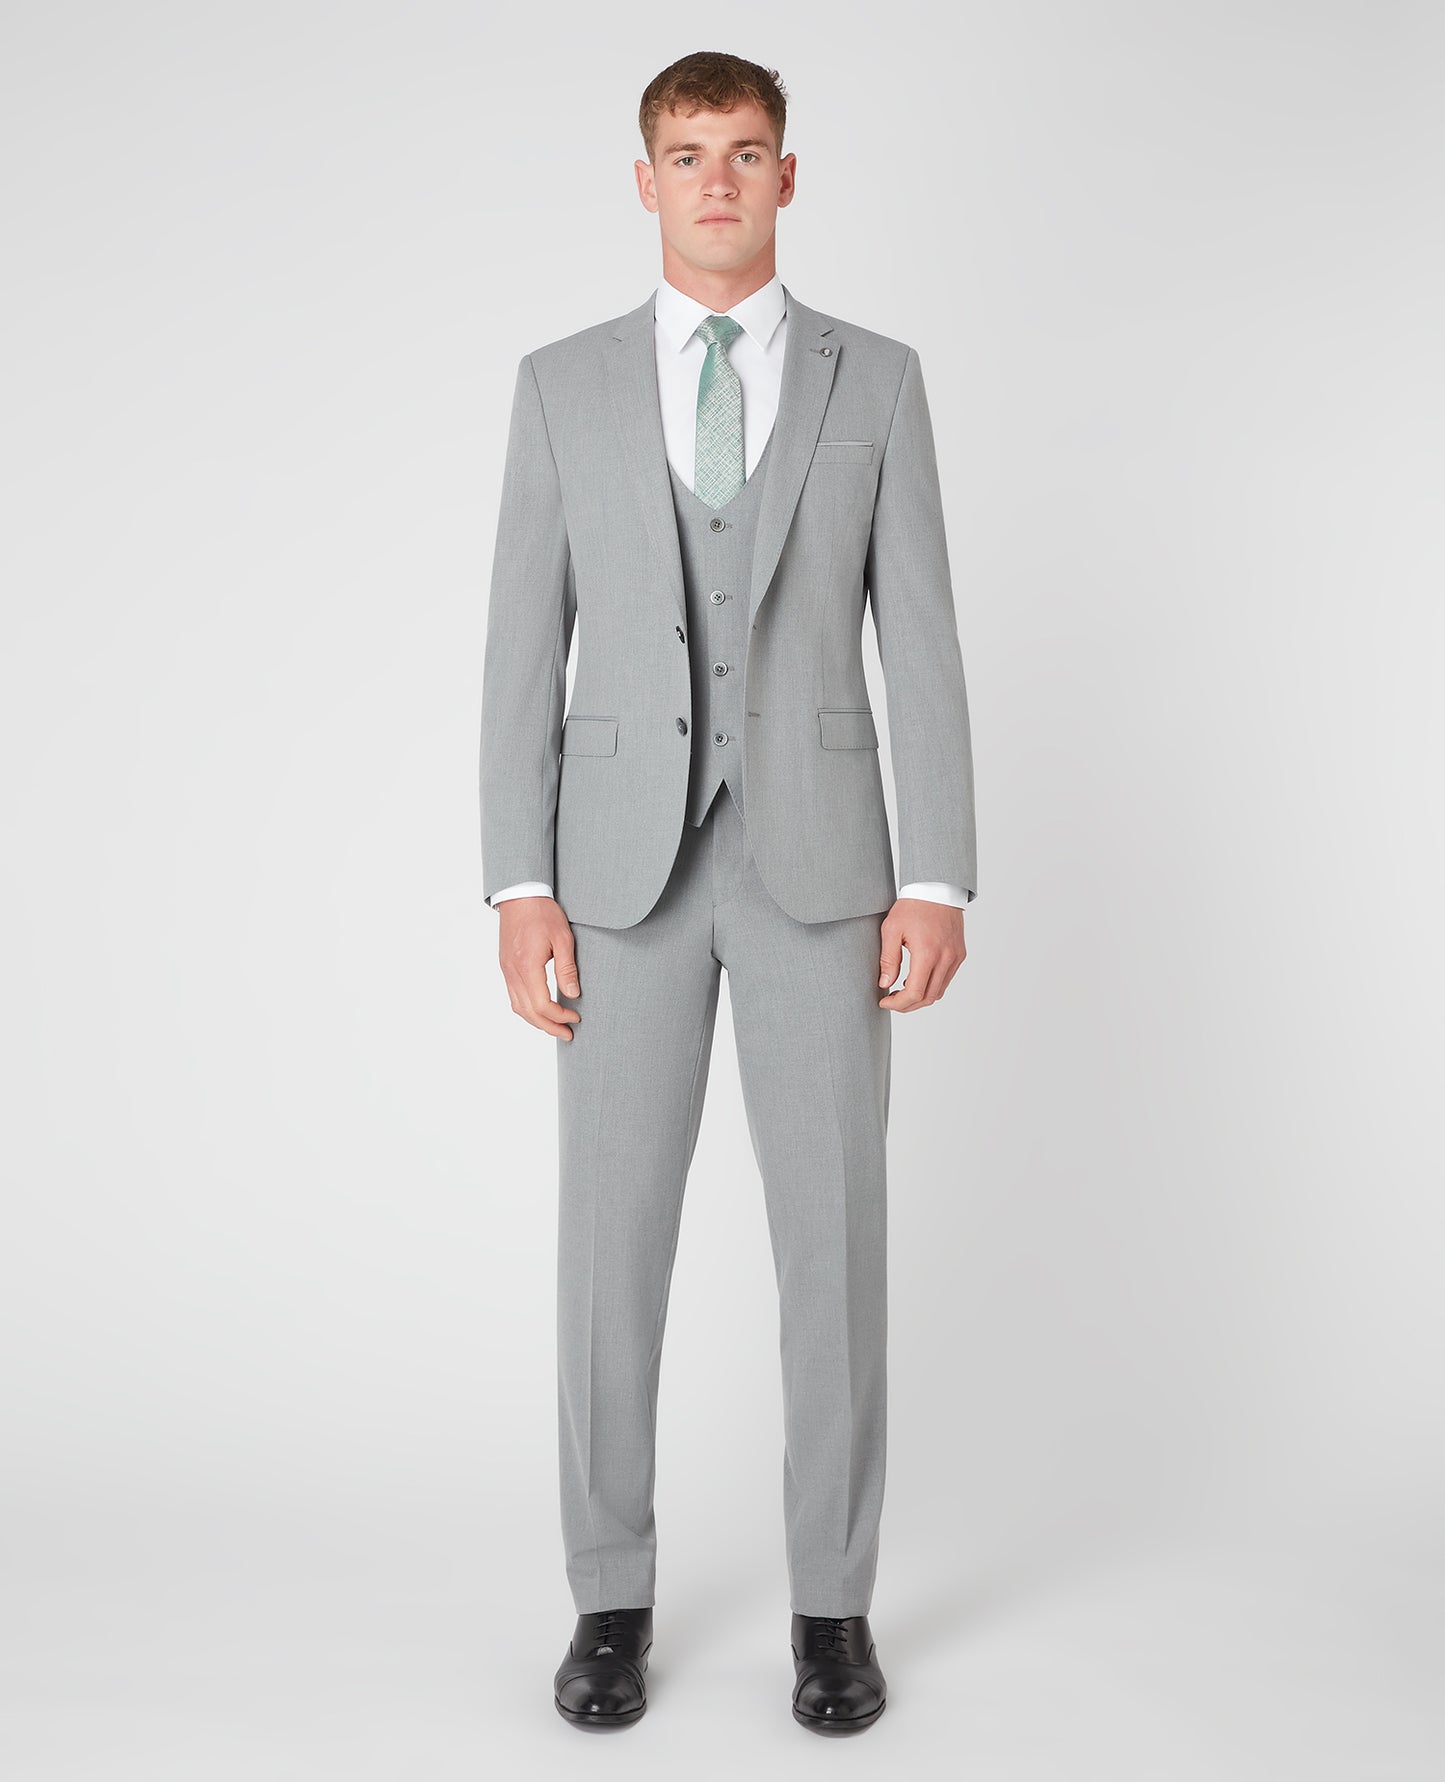 Remus Uomo 11880 05 Light Grey Slim Suit Jacket